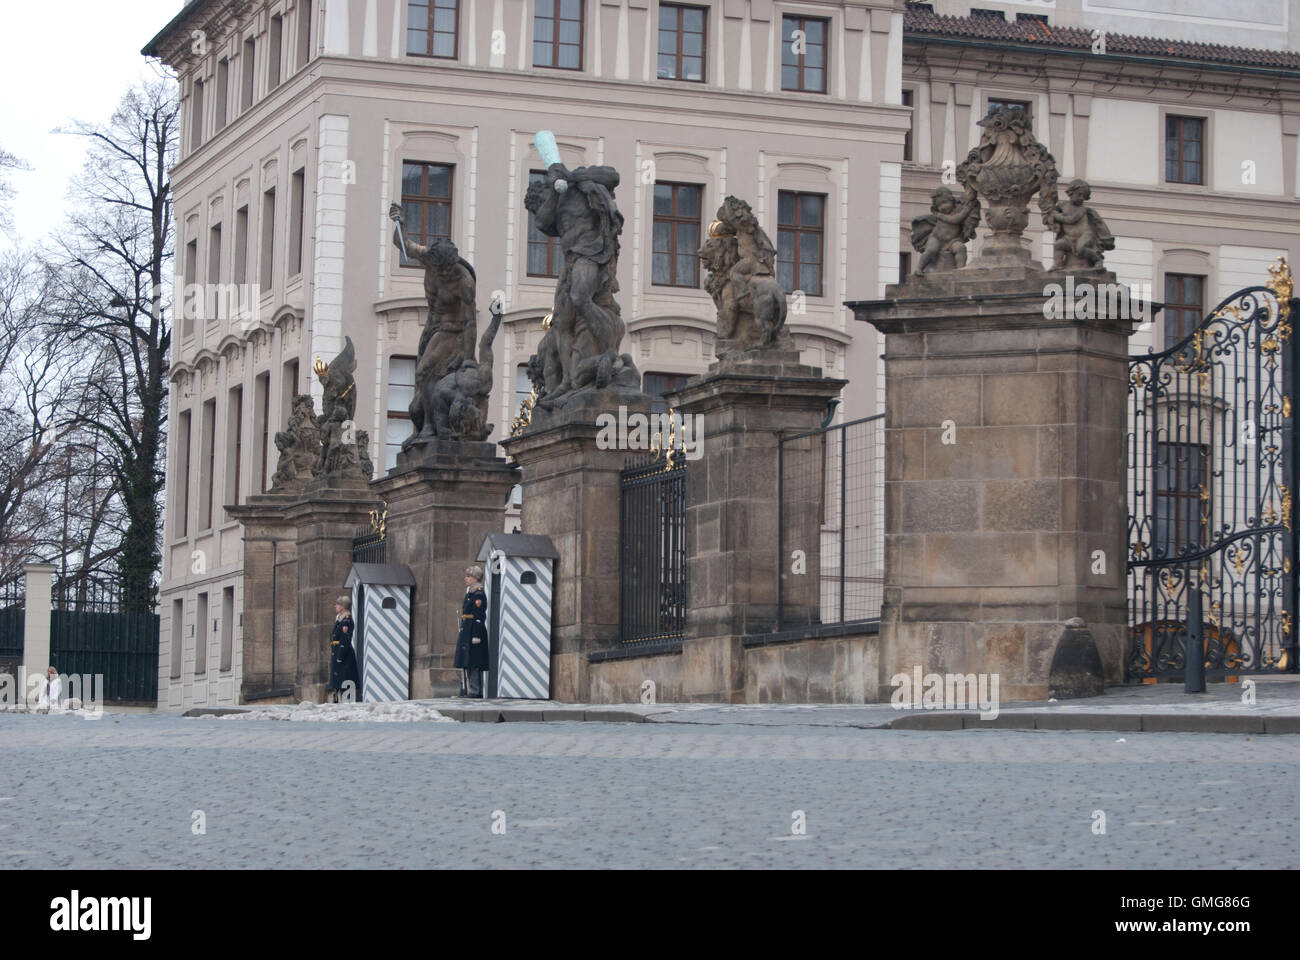 Entrance to Royal Palace, Prague Castle, Prague, Czech Republic Stock Photo